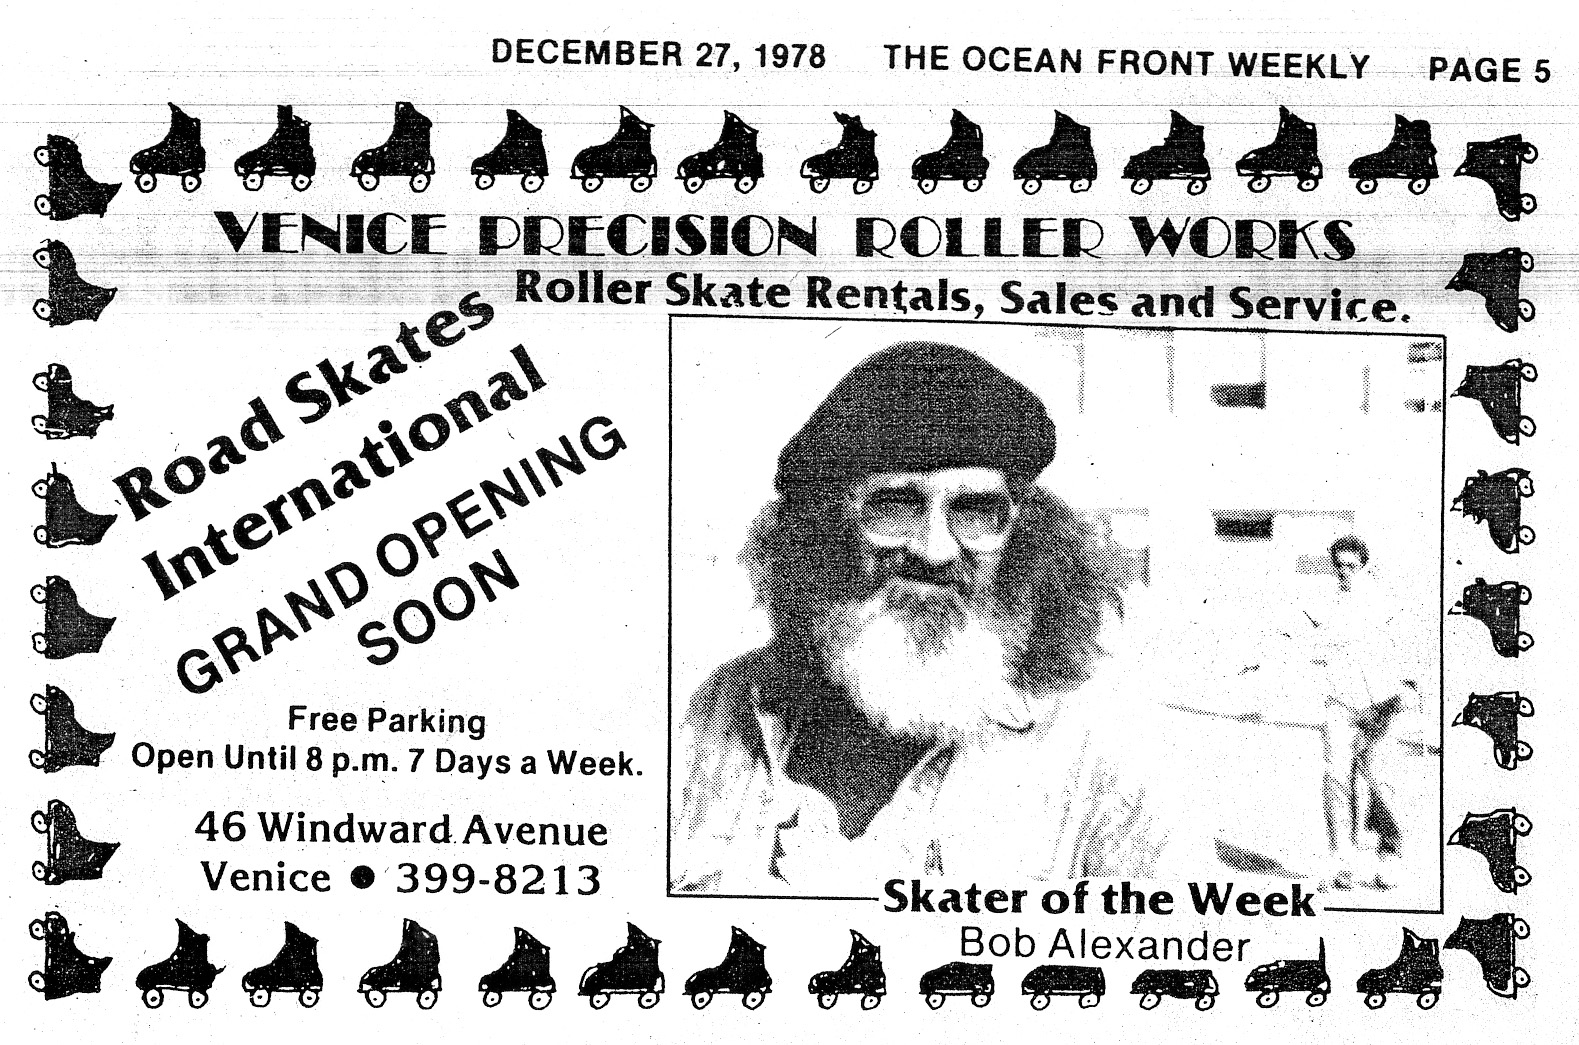 Bob Alexander, Skater of the Week. From <em>The Ocean Front Weekly</em>, December 27, 1978.